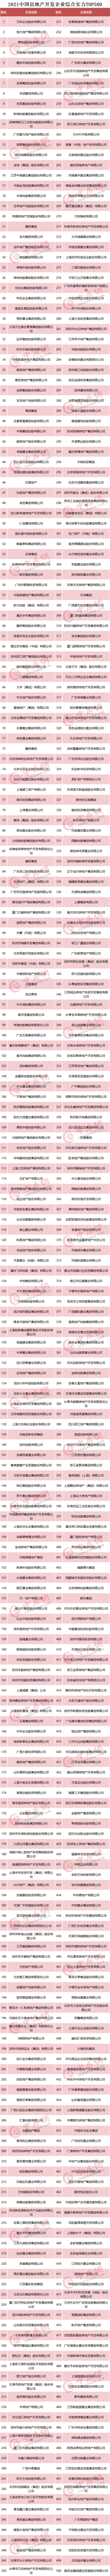 中国房地产排行榜_中国房地产公司排行榜2021新排名:全国知名房企现状